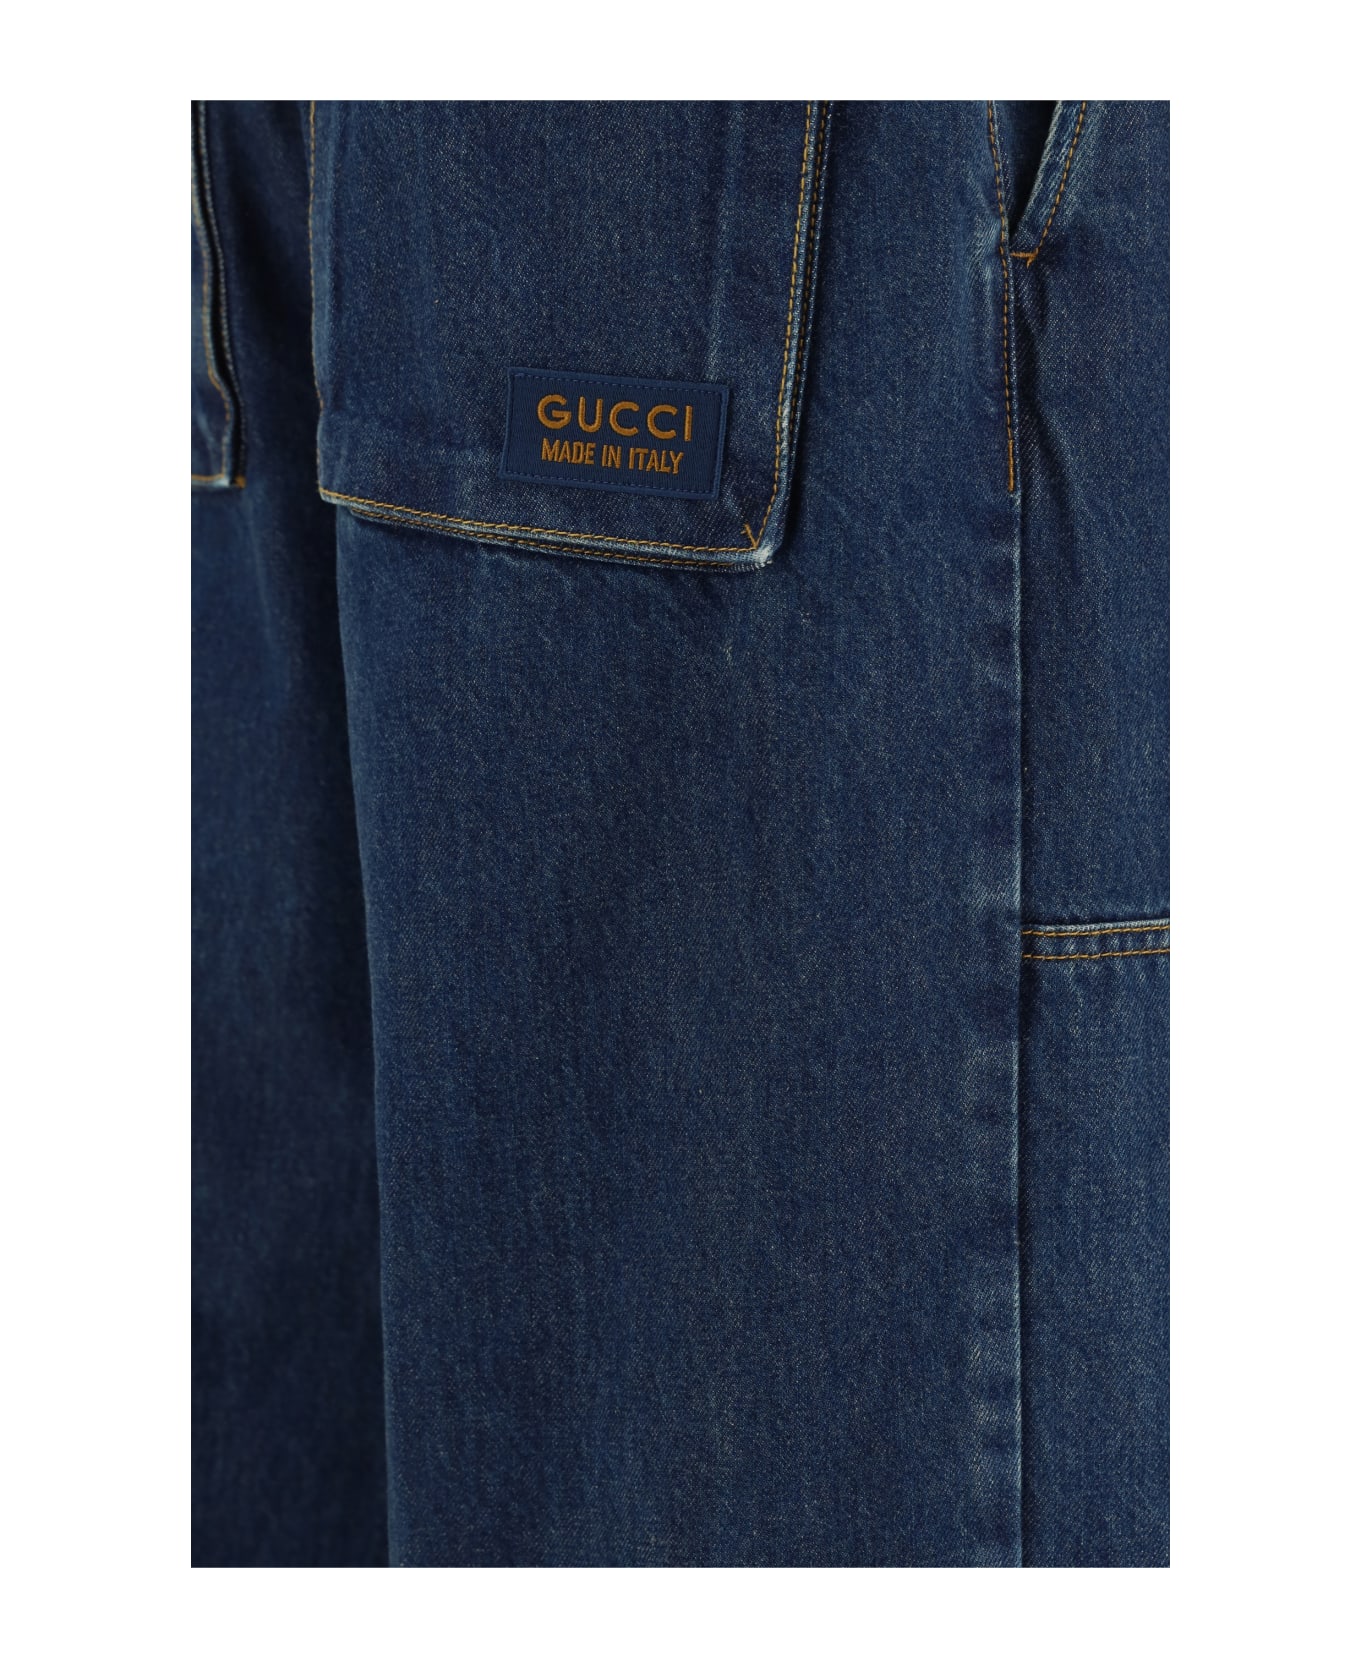 Gucci Jeans - Blue Mix